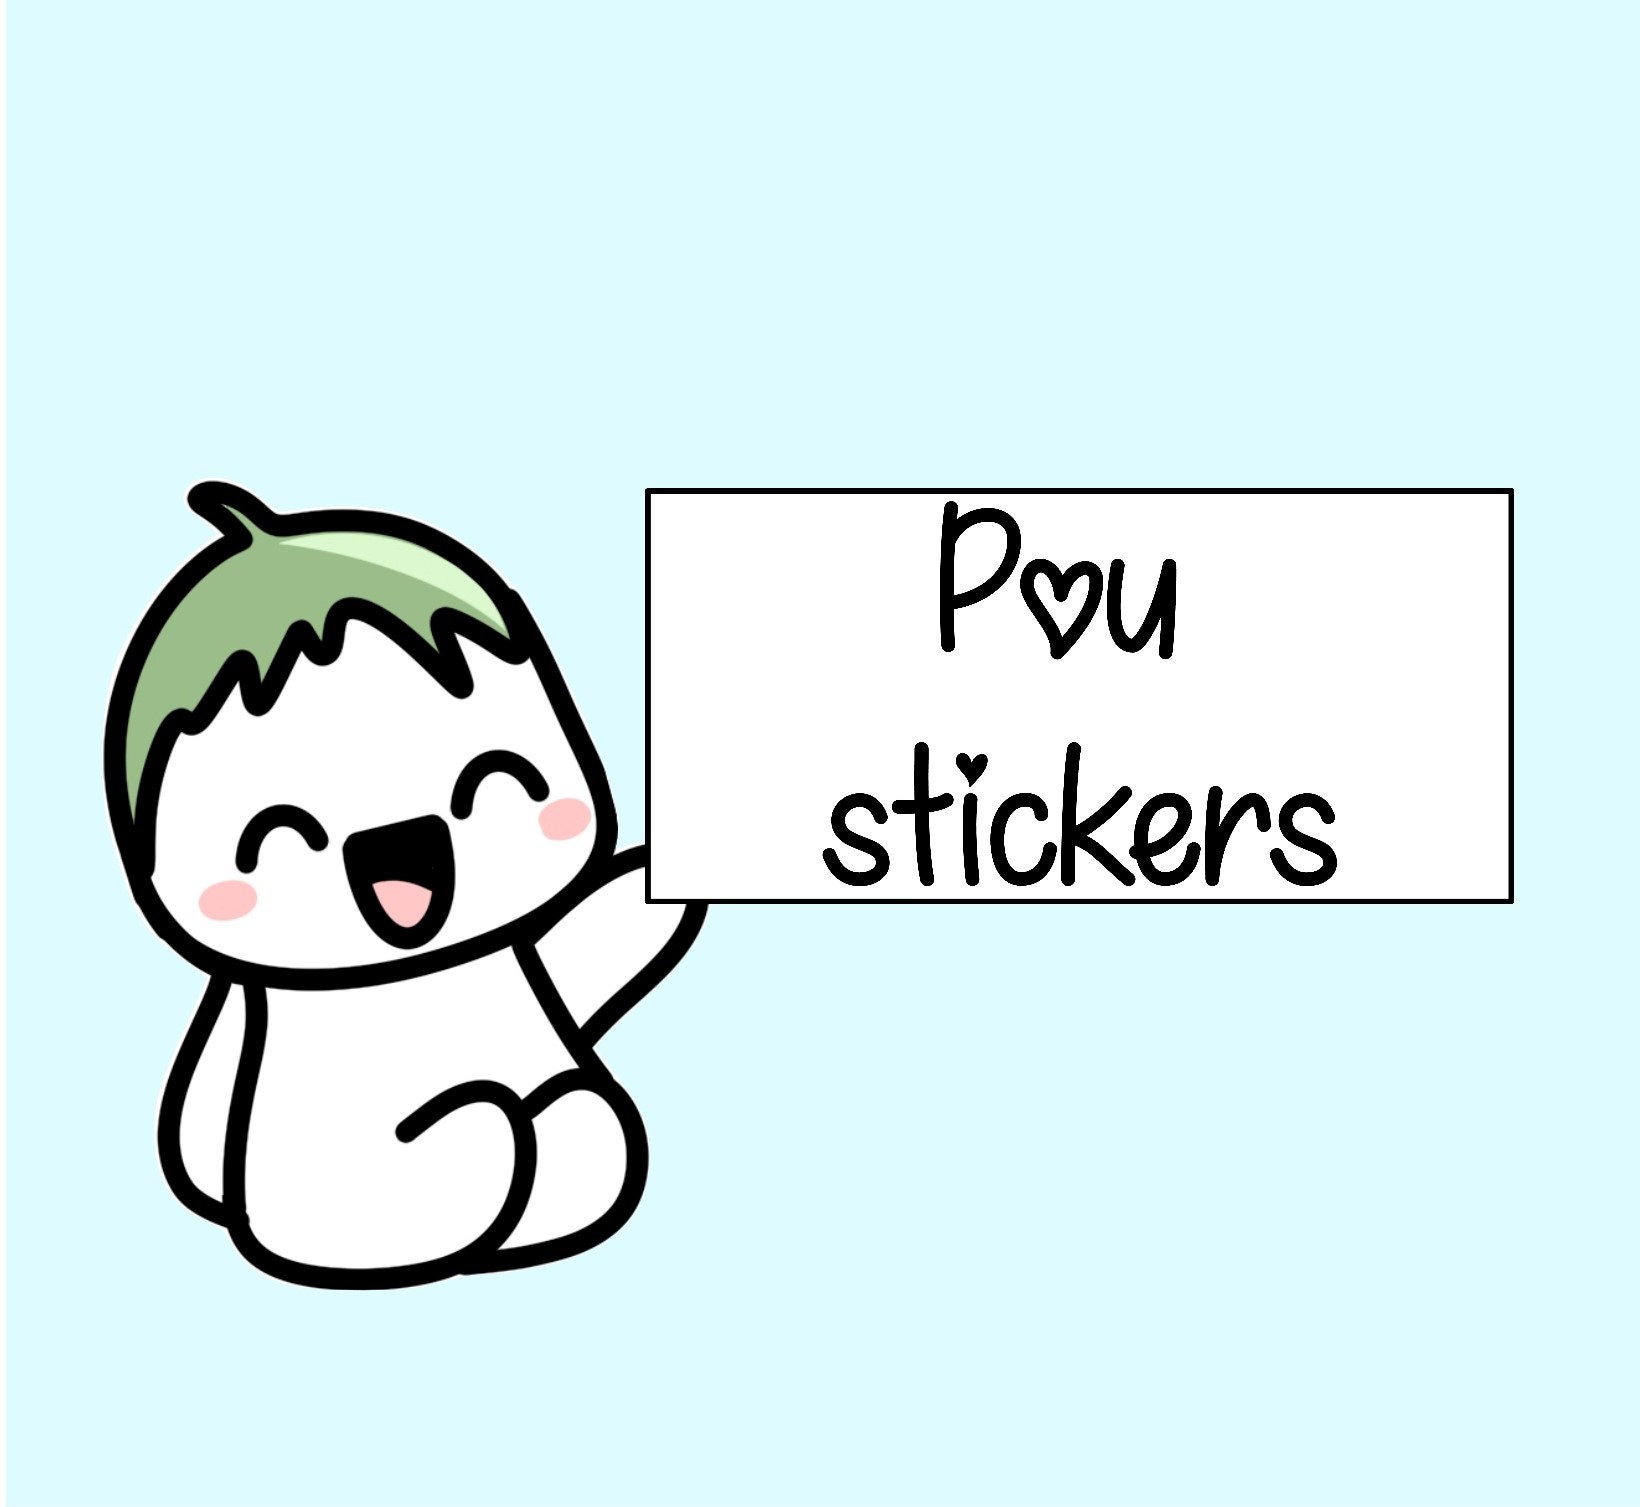 Pou Meme Stickers for Sale